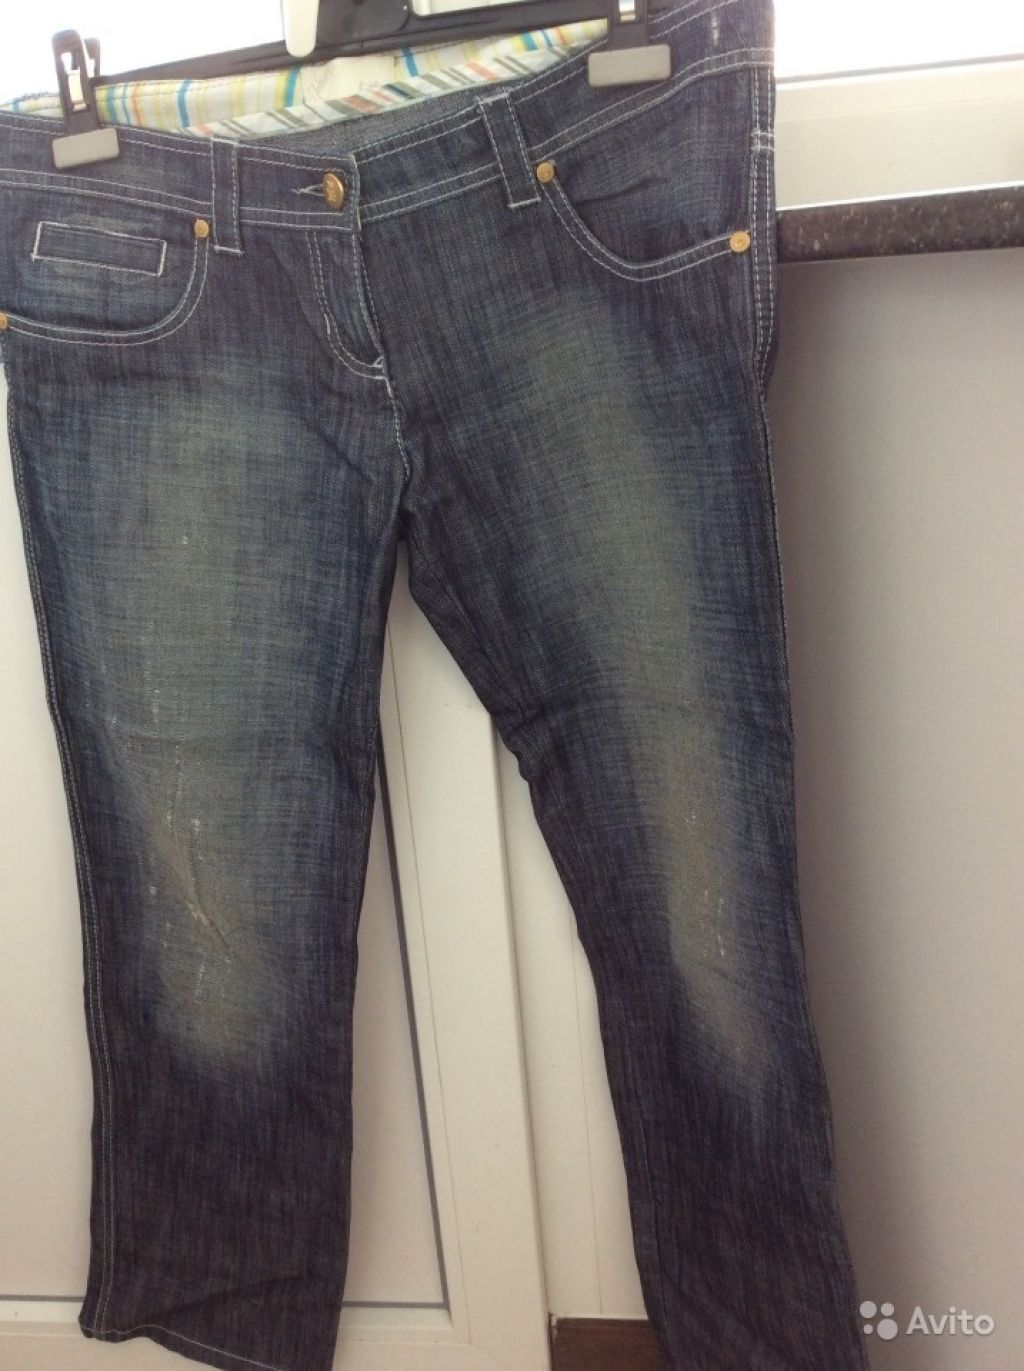 Брендовые джинсы Byblos в идеальном сост.укорочен в Москве. Фото 1